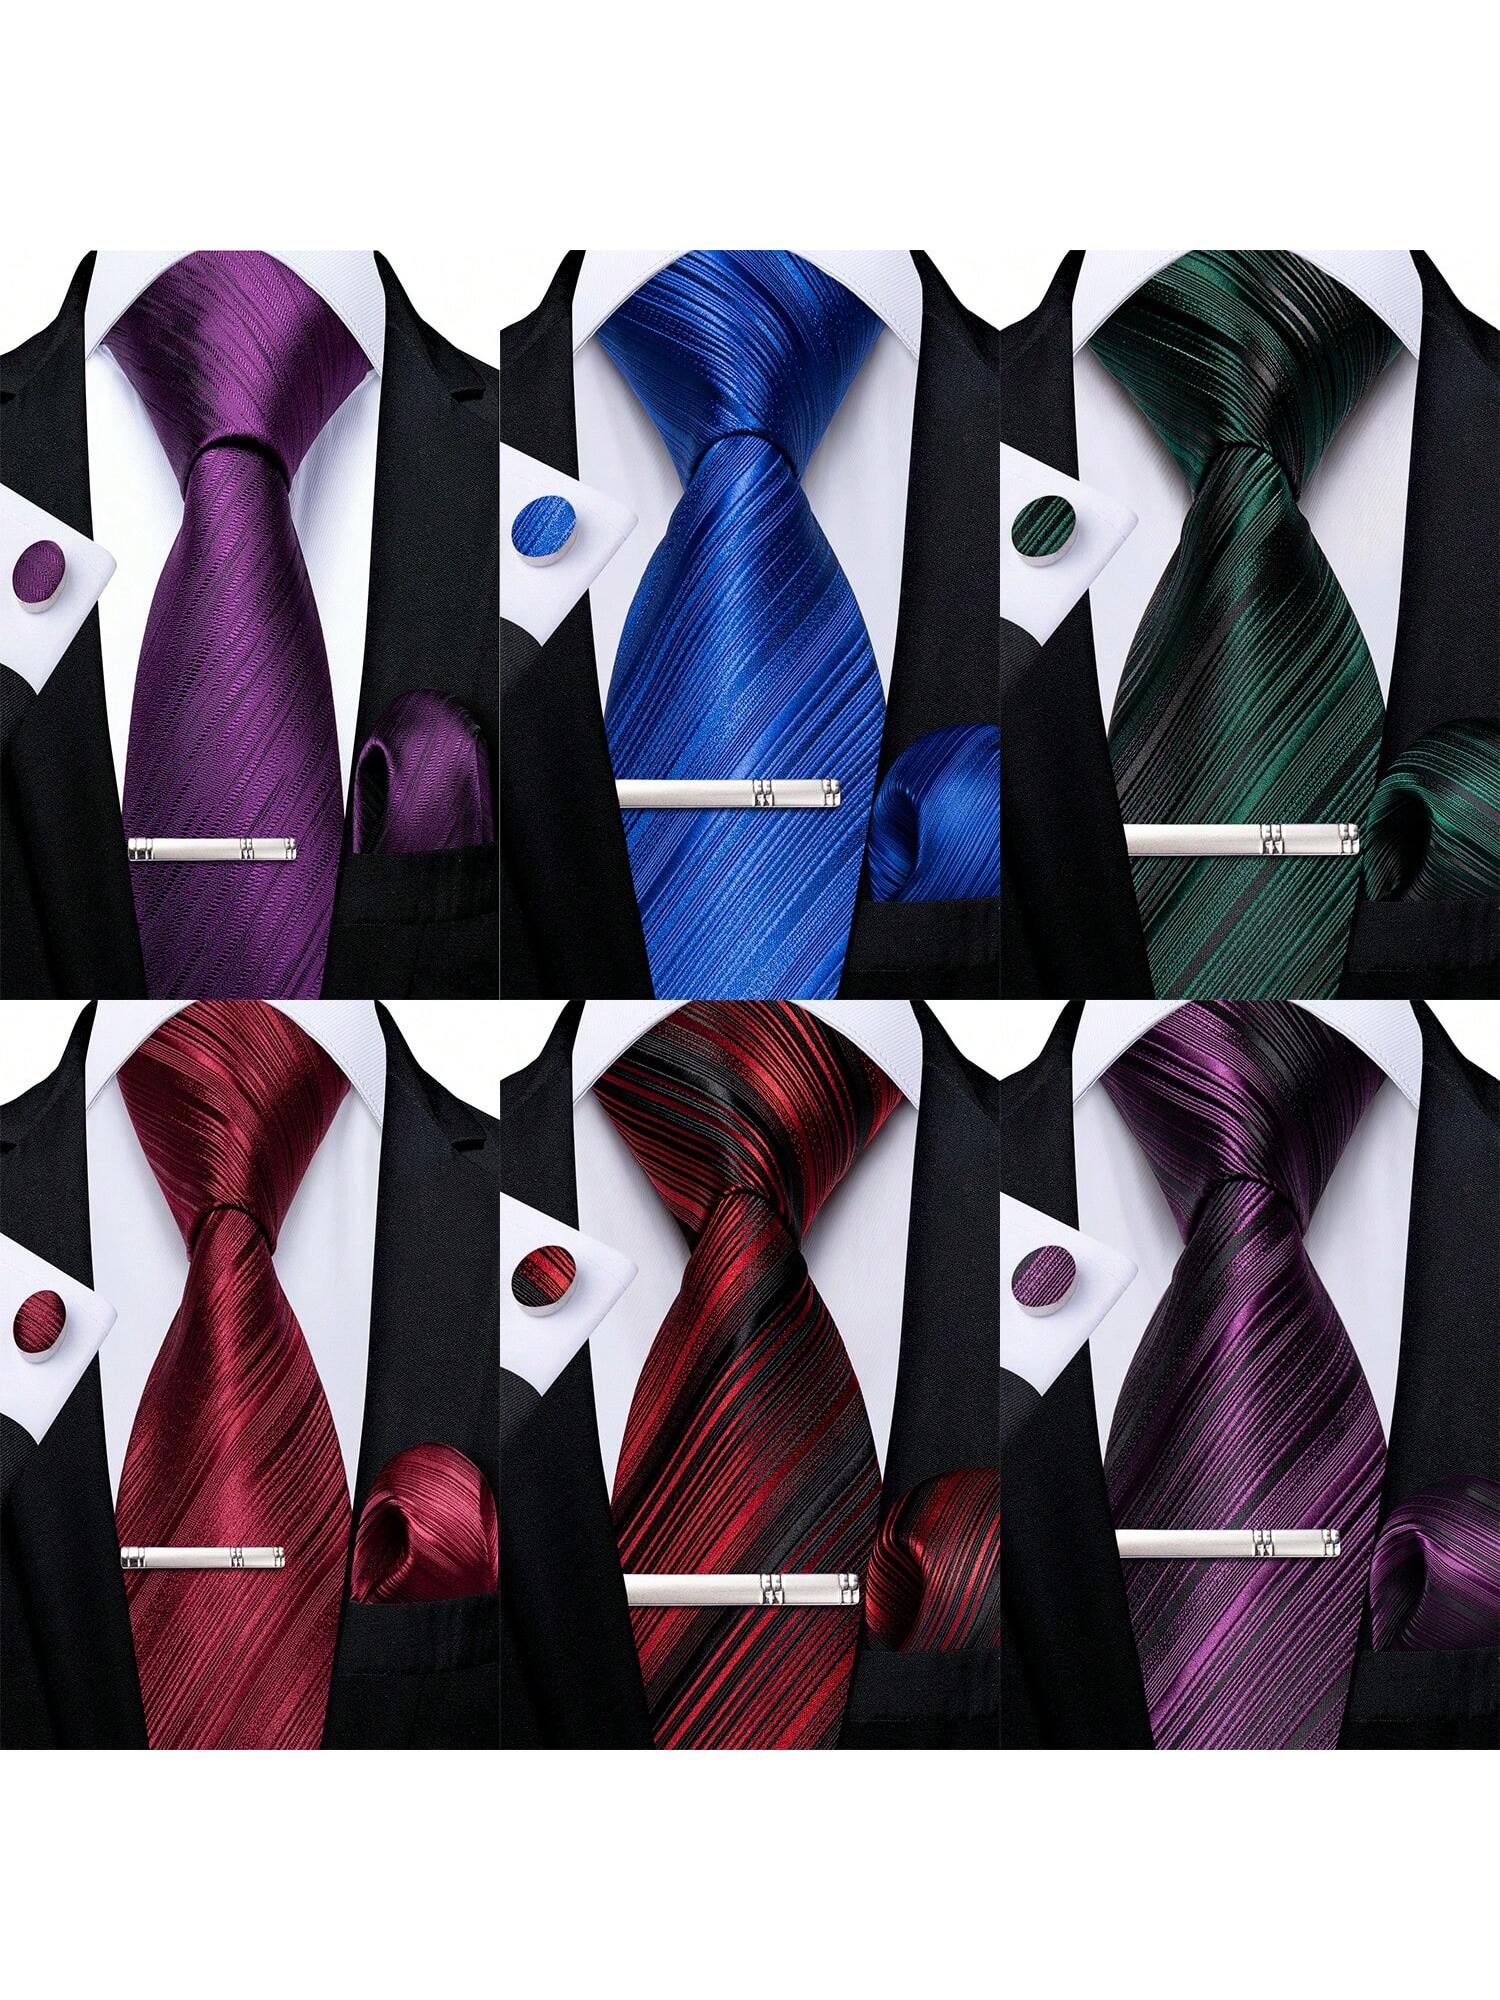 DiBanGu мужские галстуки шелковые полосатые свадебные галстуки карманные квадратные запонки зажим набор свадебный 4 шт., многоцветный